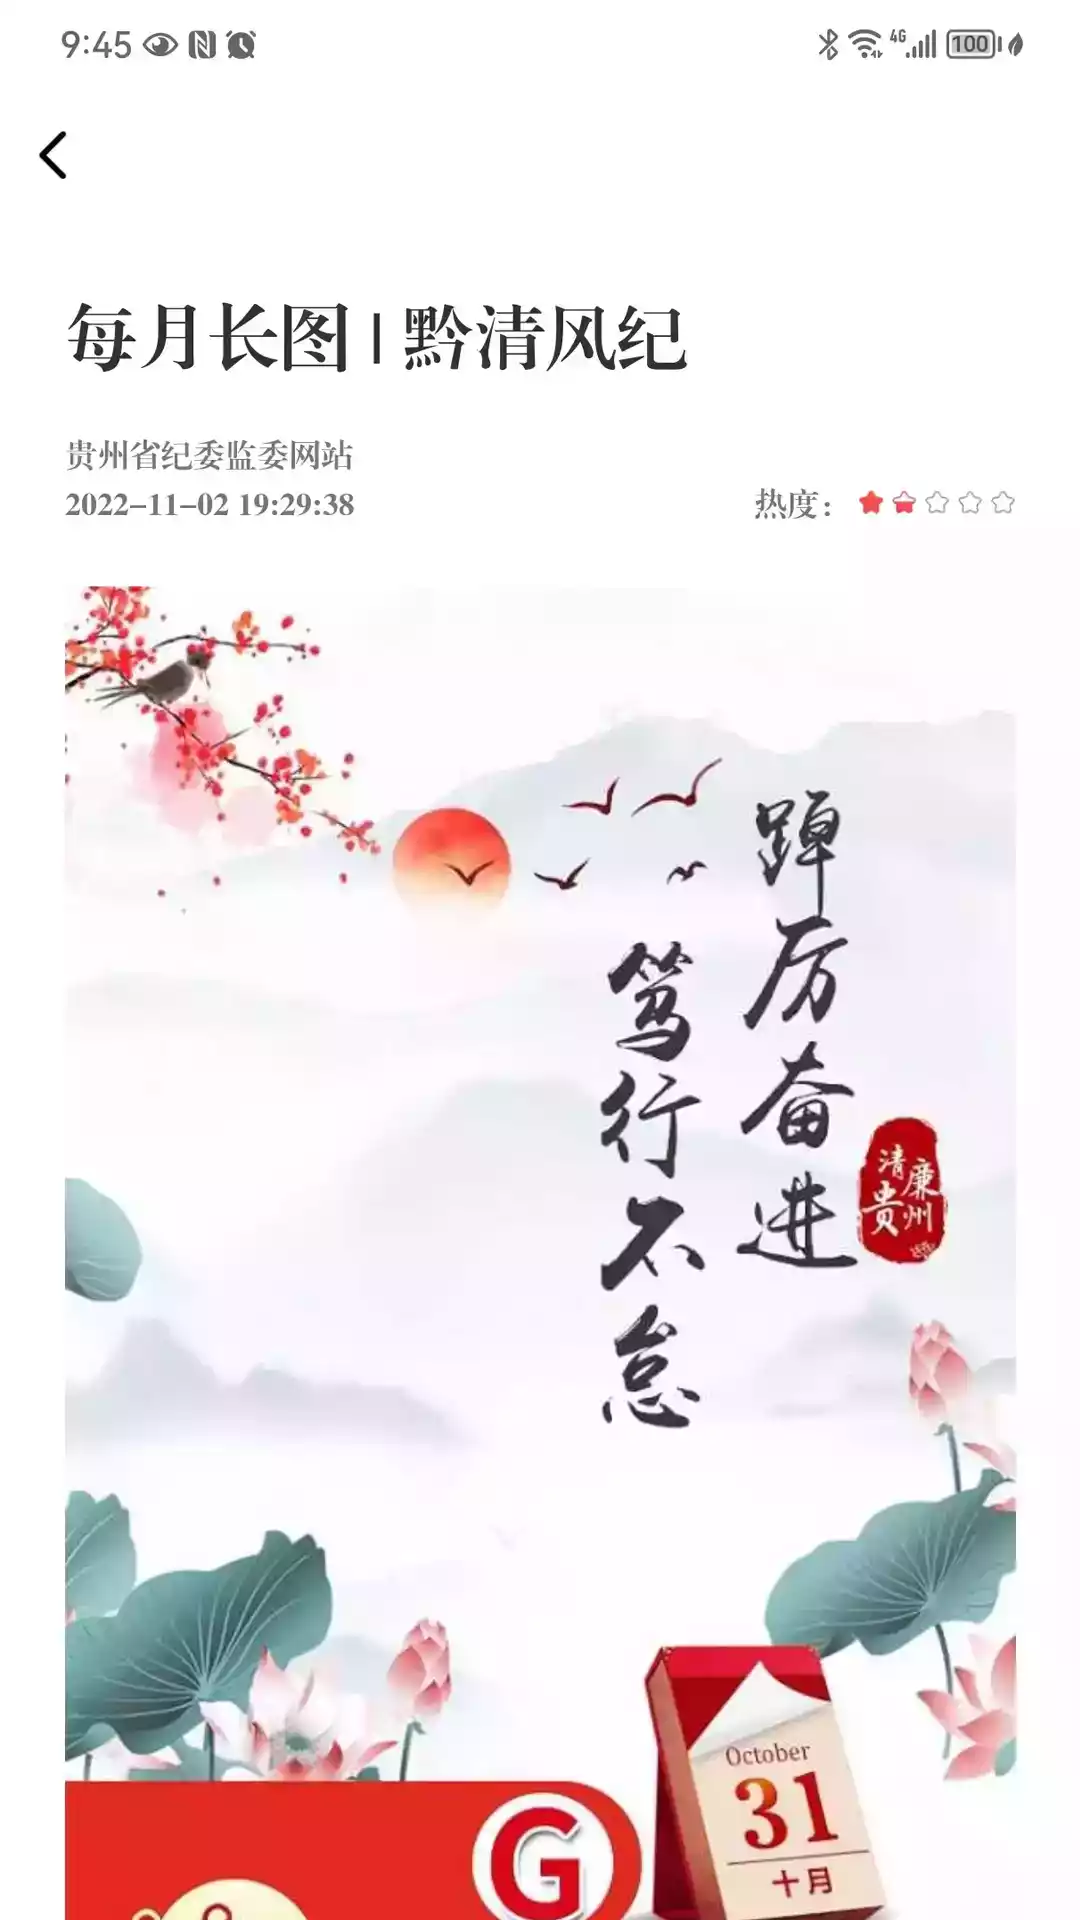 贵州纪检监察网站首页